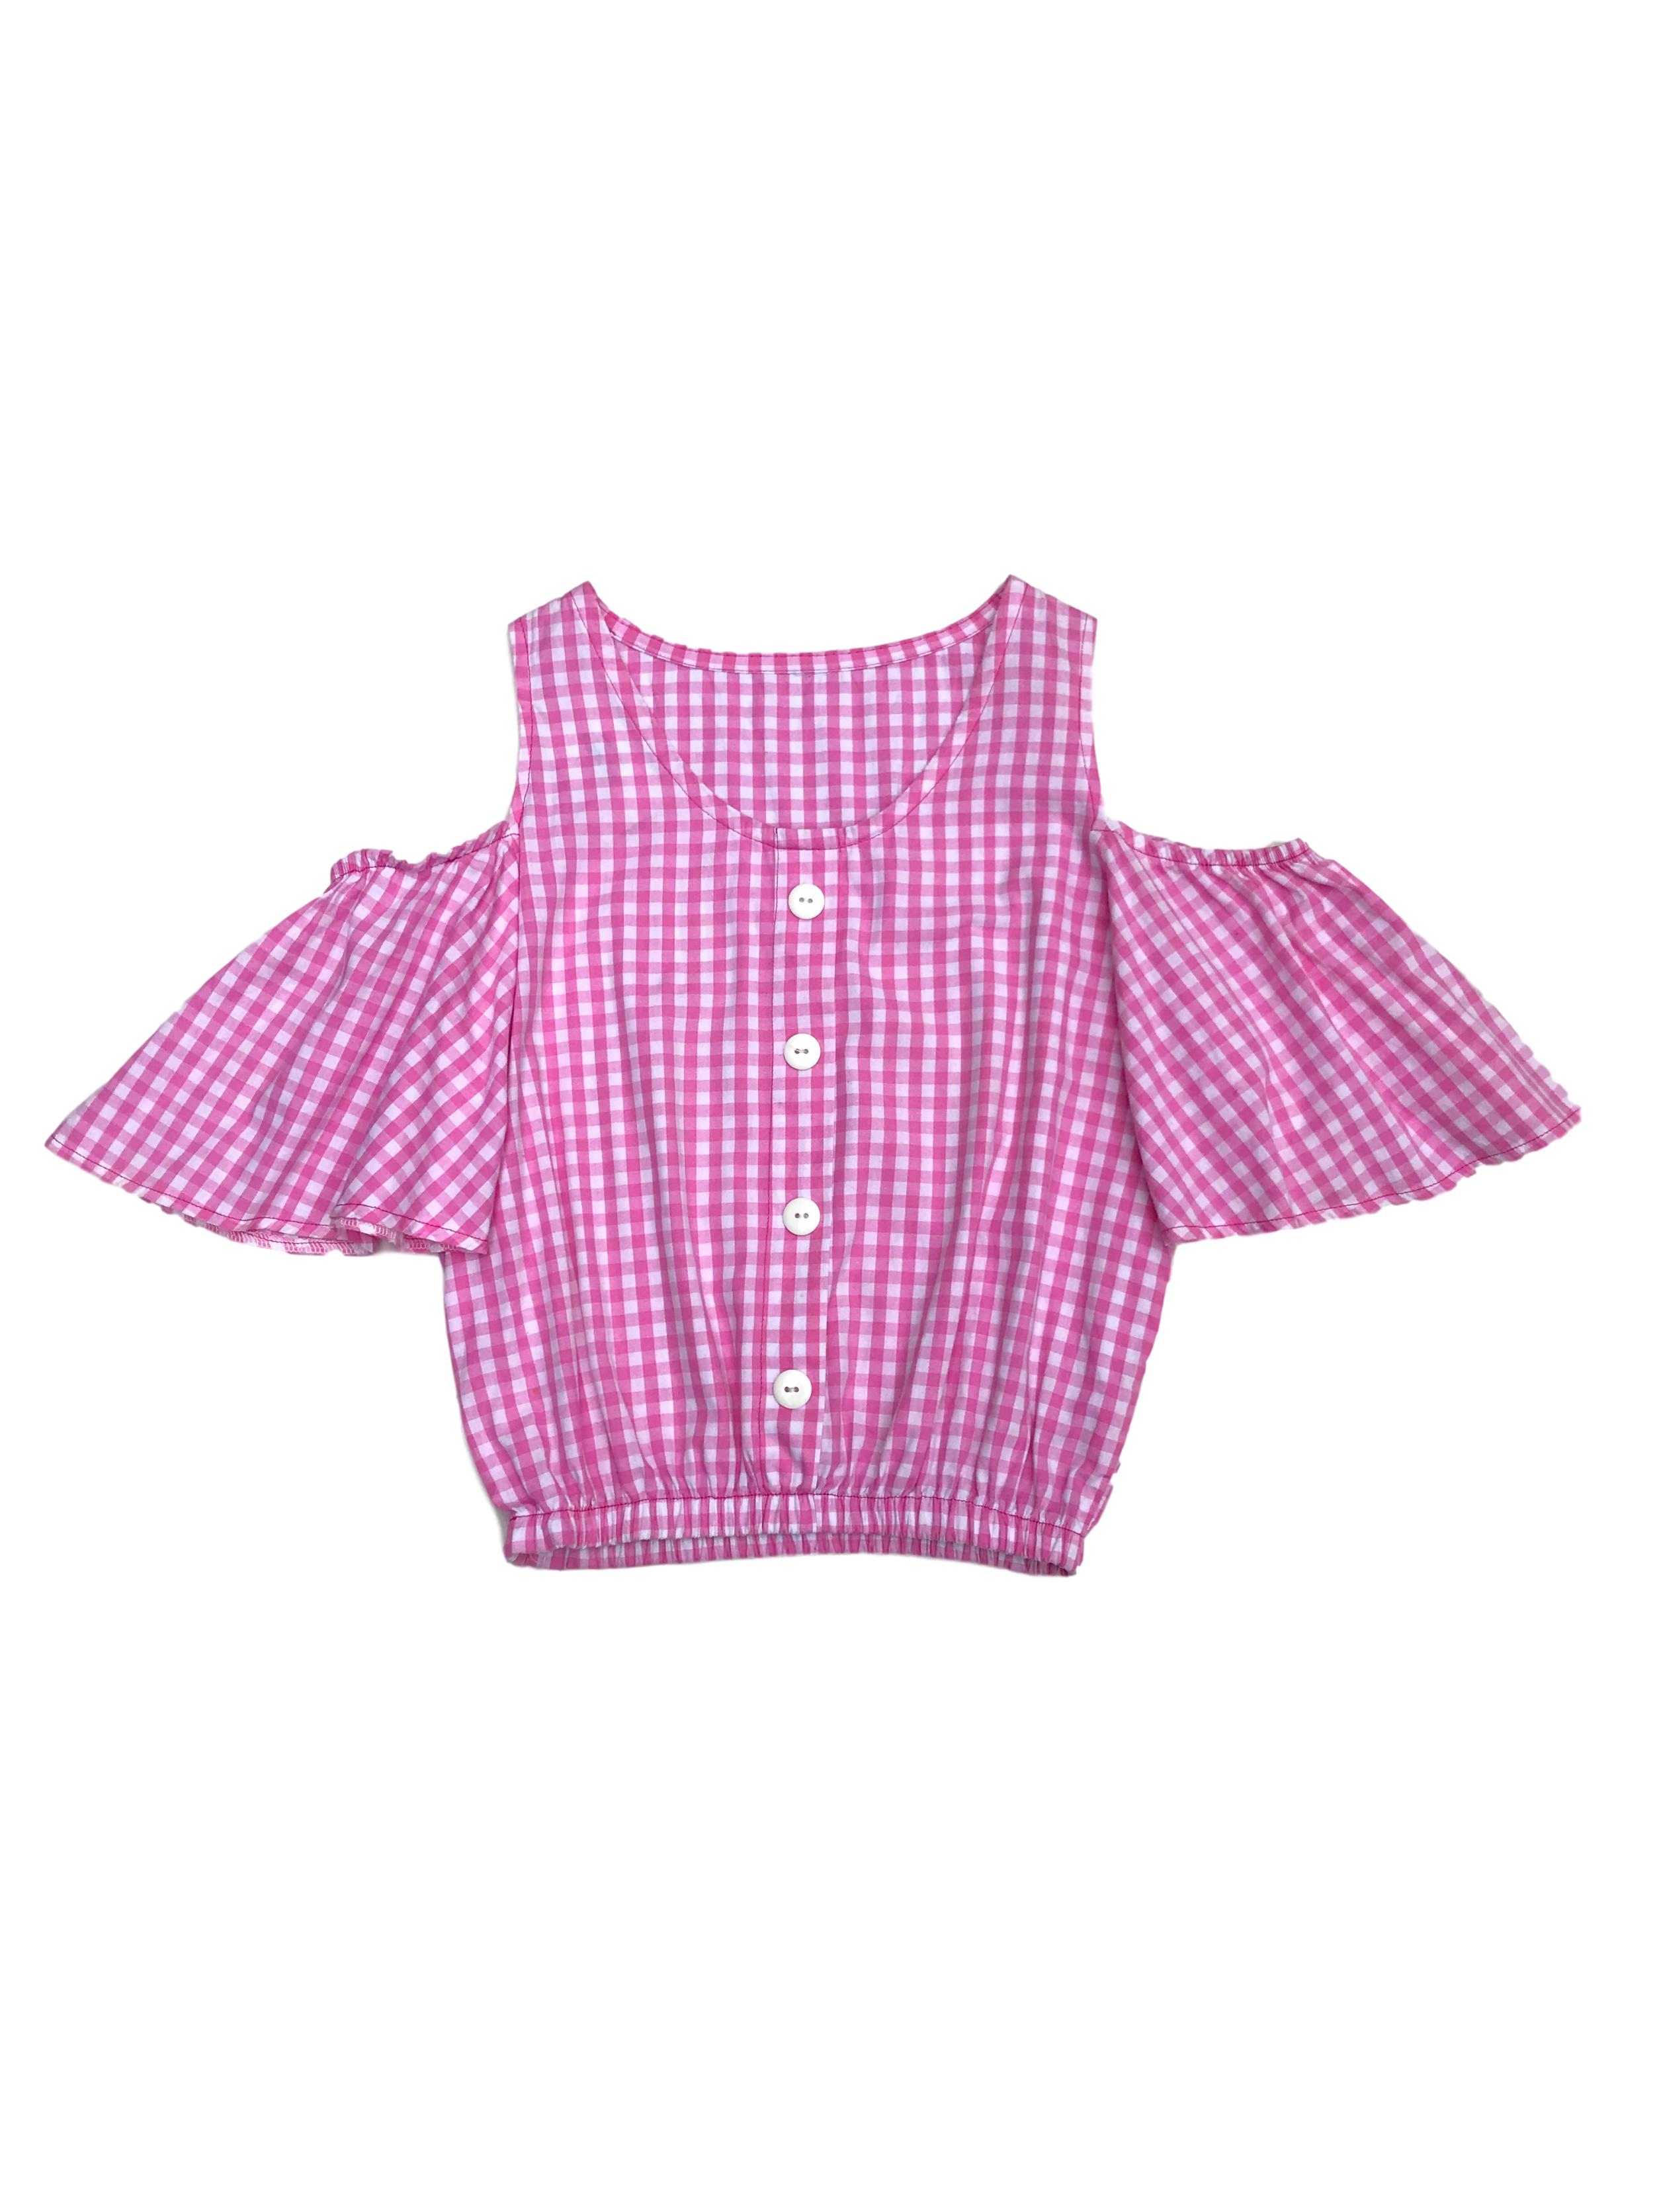 Blusa de vichy a cuadros blancos y rosados, calado en los hombros, elástico en las mangas y basta, botones en el centro 